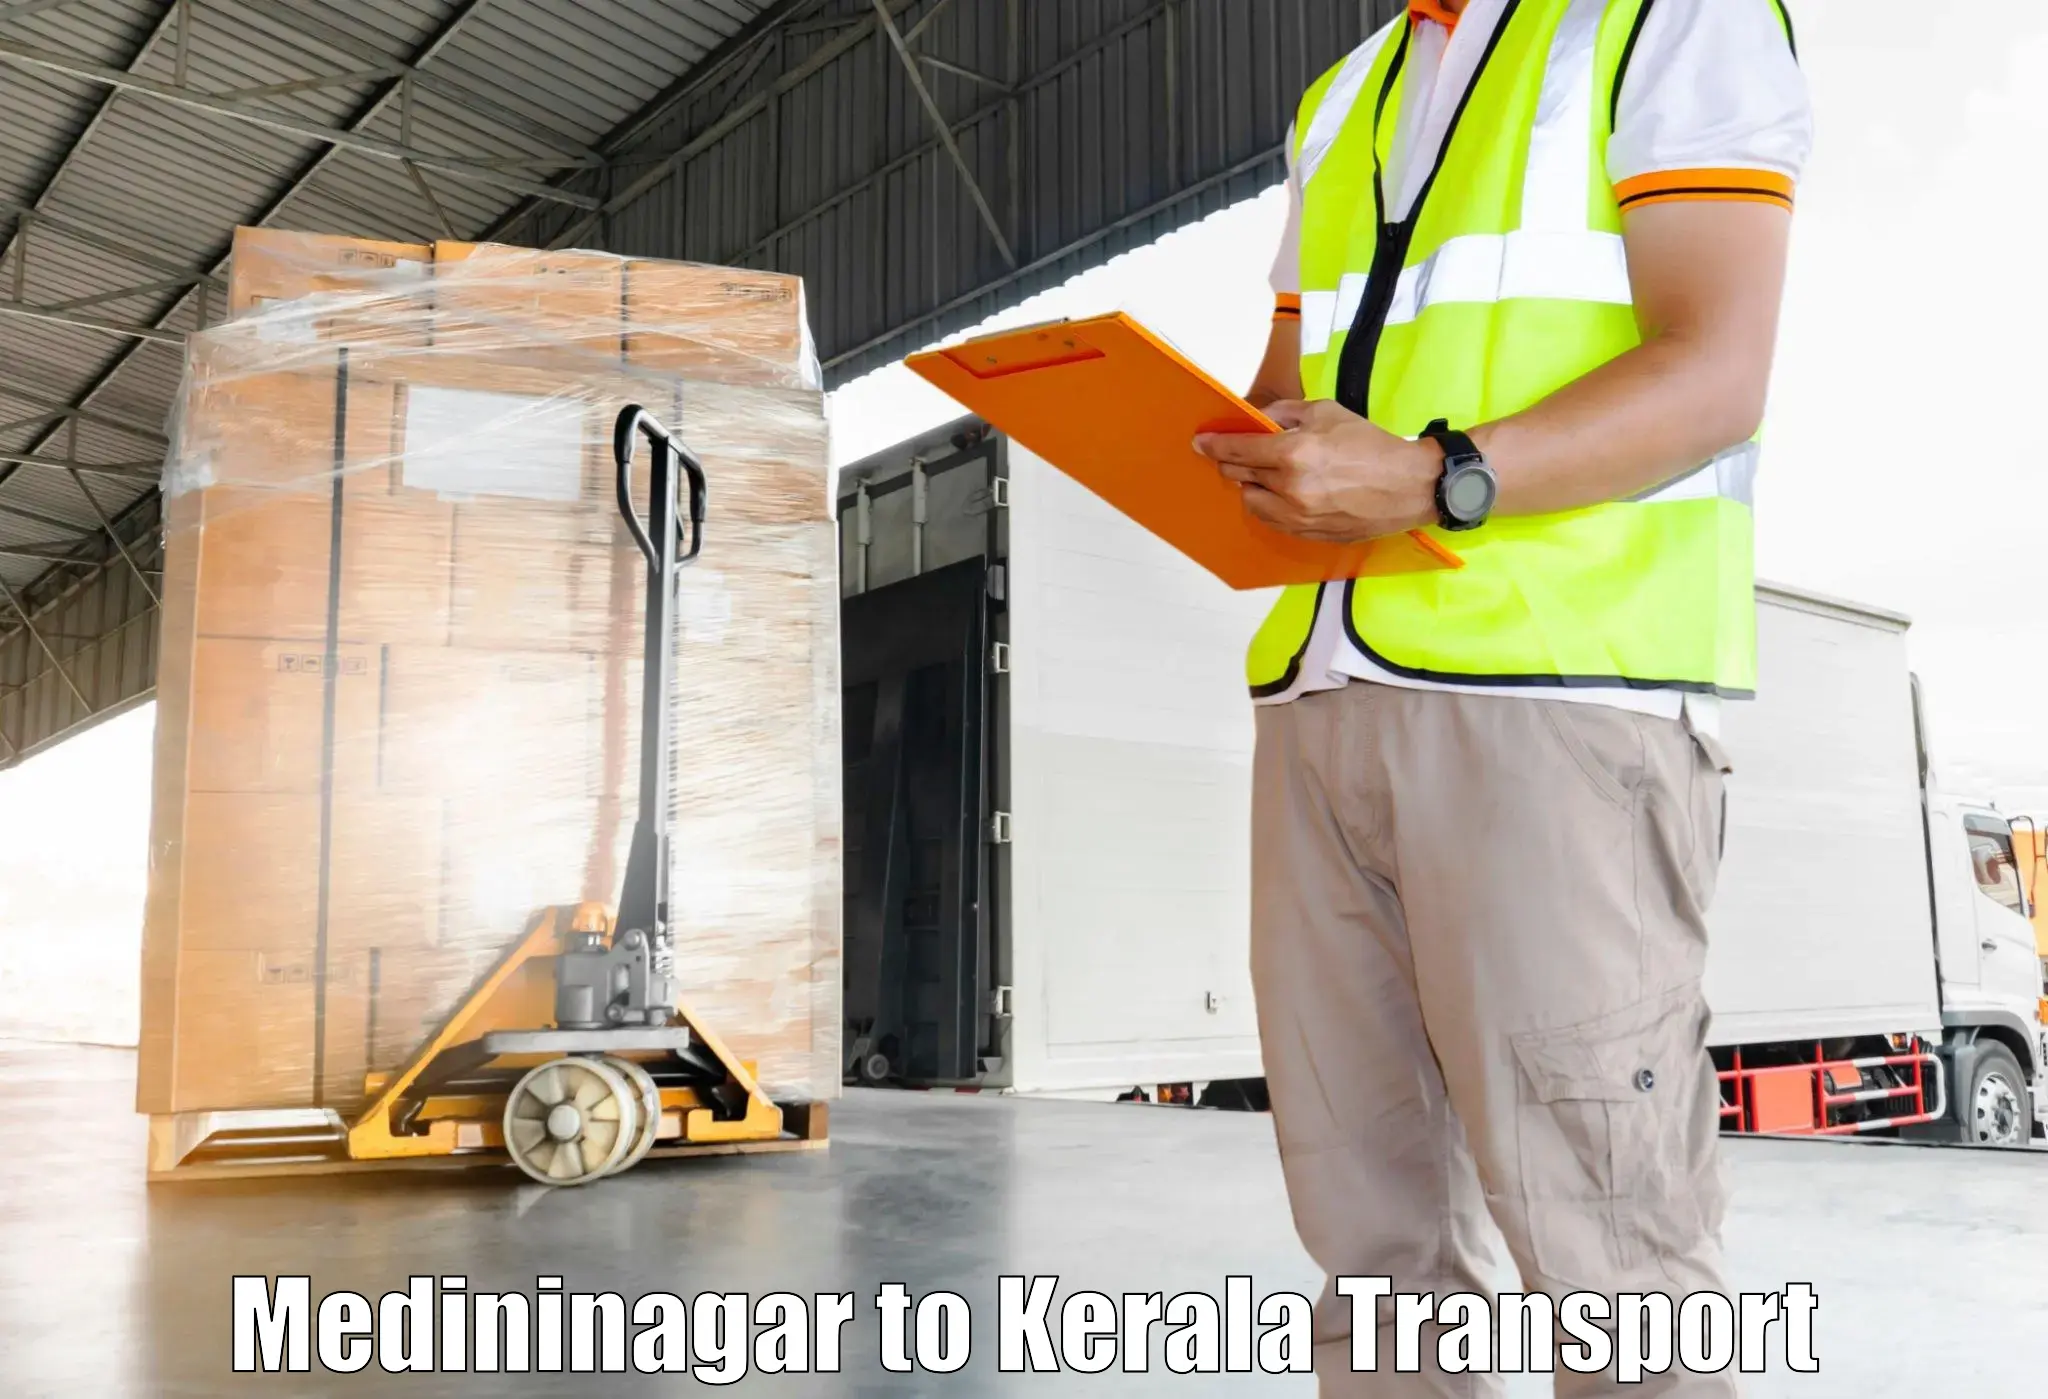 Container transport service Medininagar to Kalanjoor